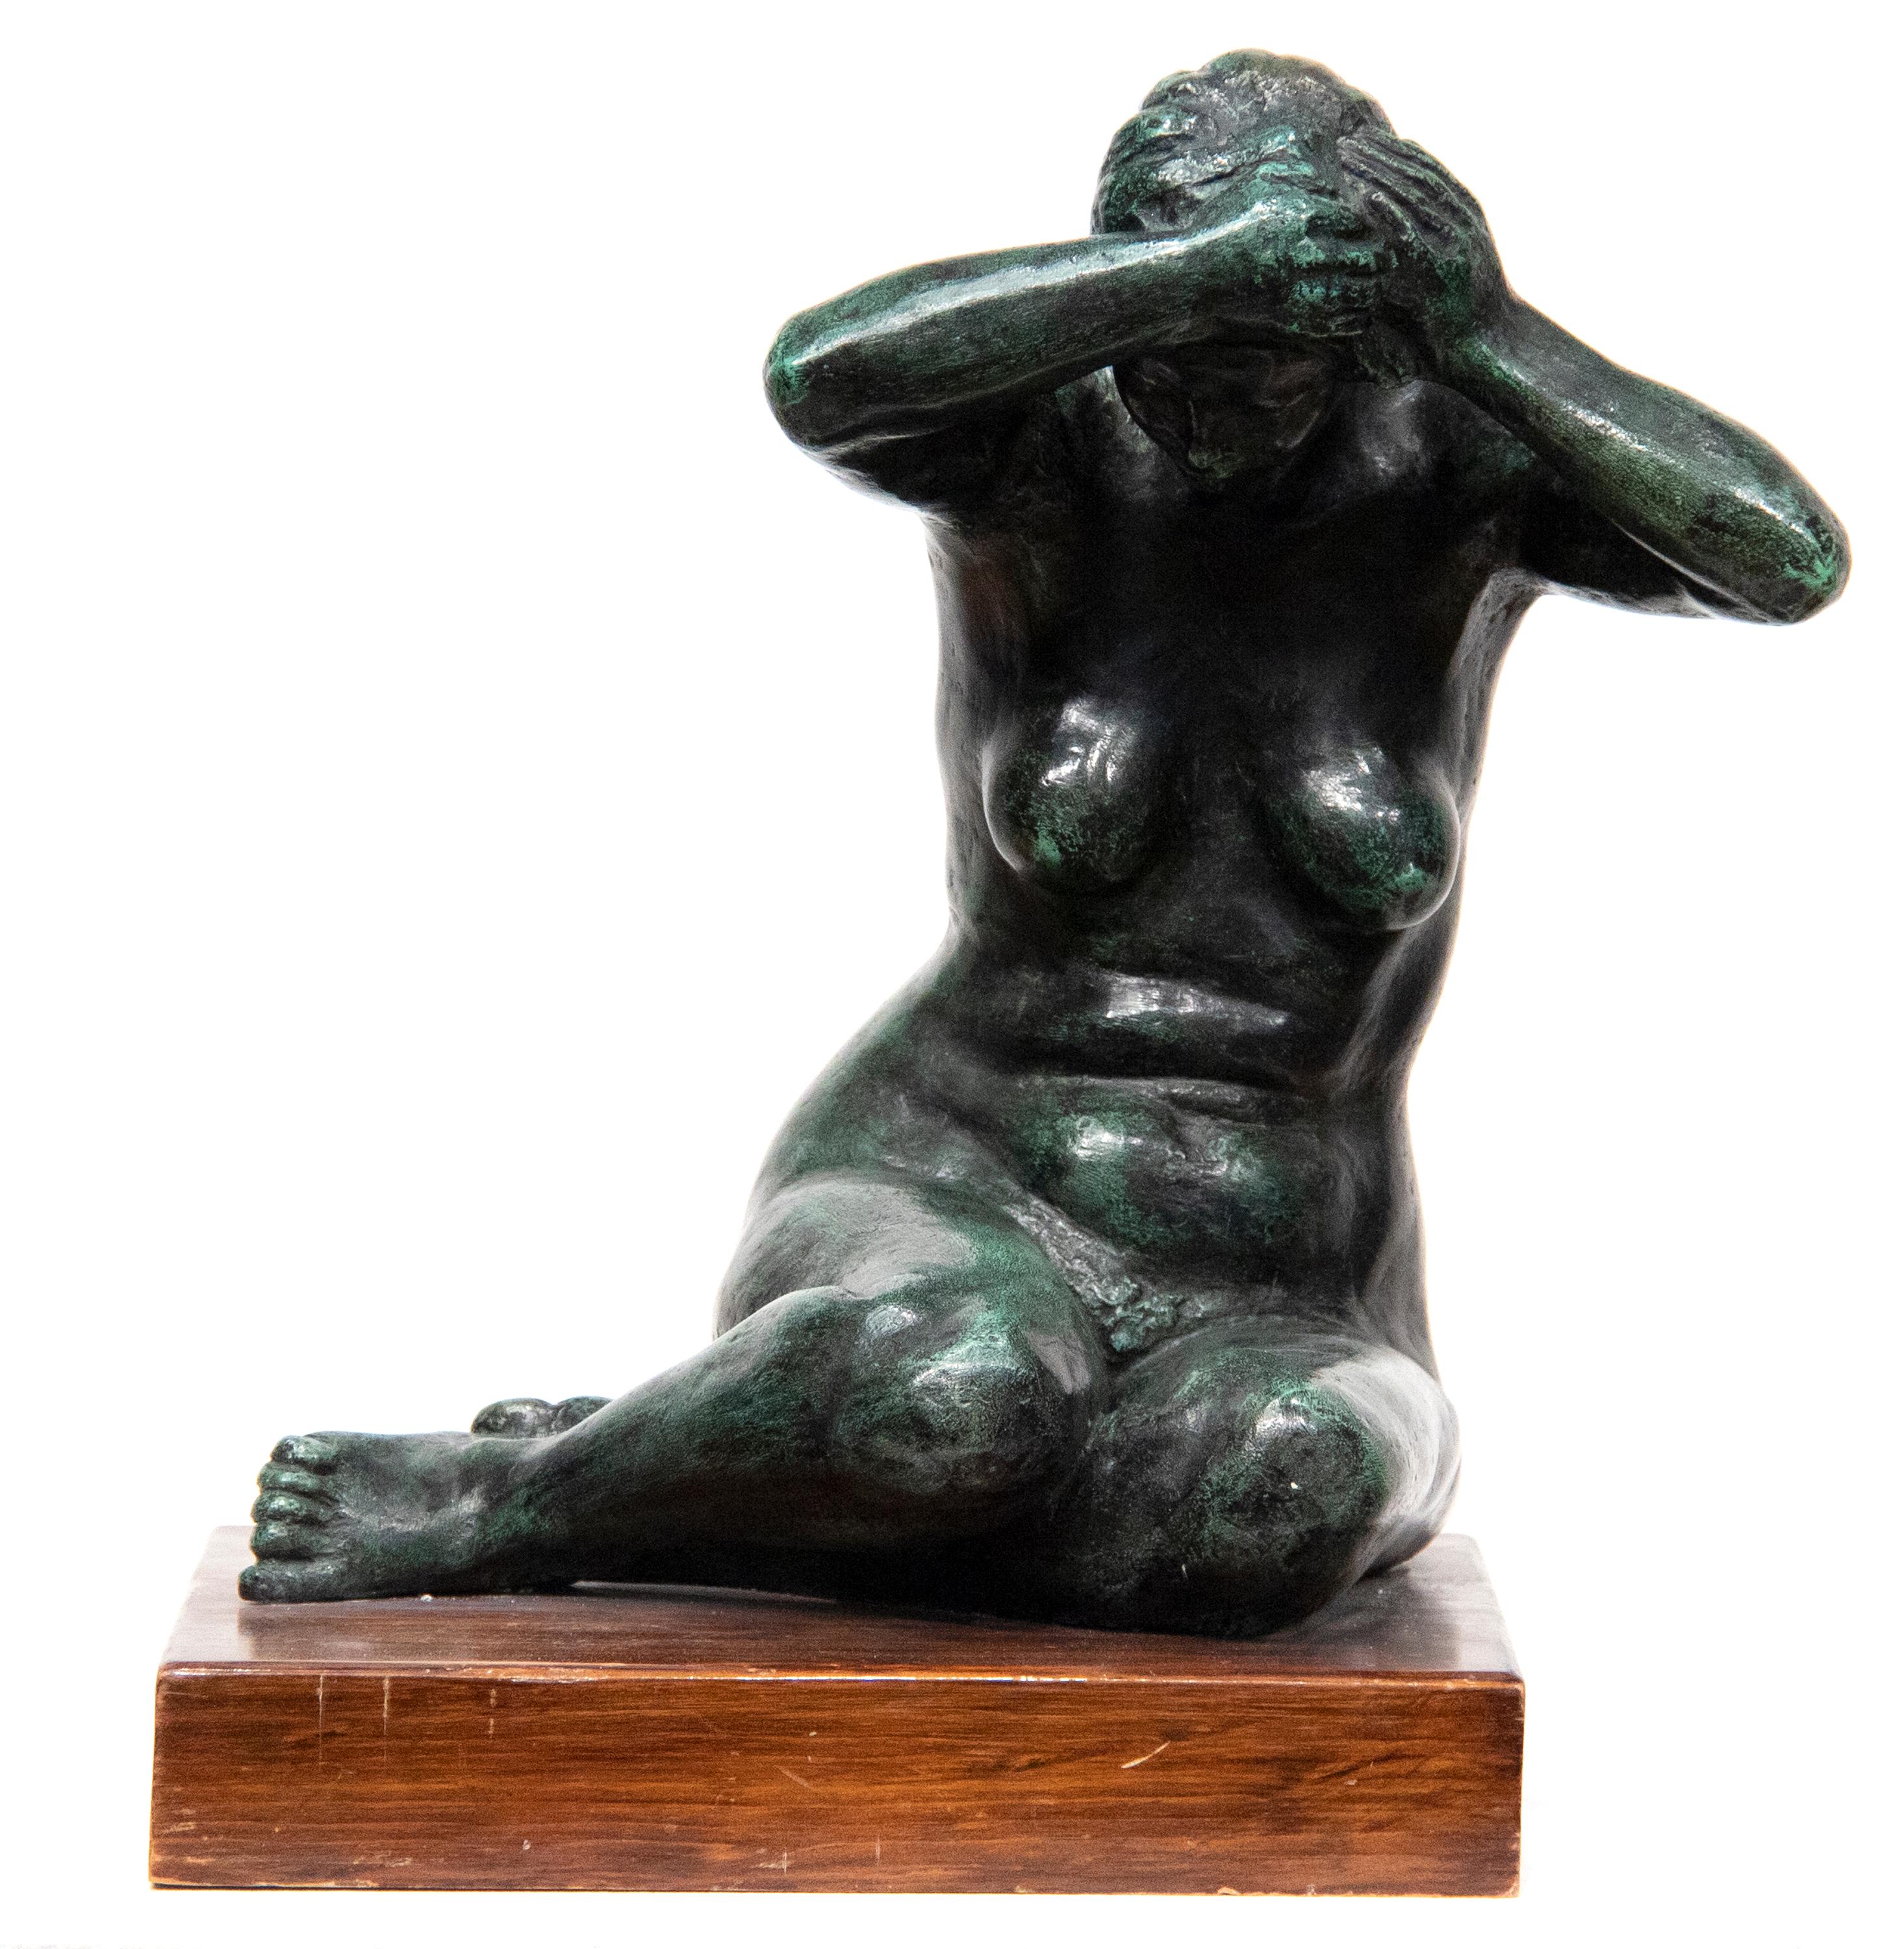 Mujer Peinandose - Sculpture by CASTANEDA, FELIPE